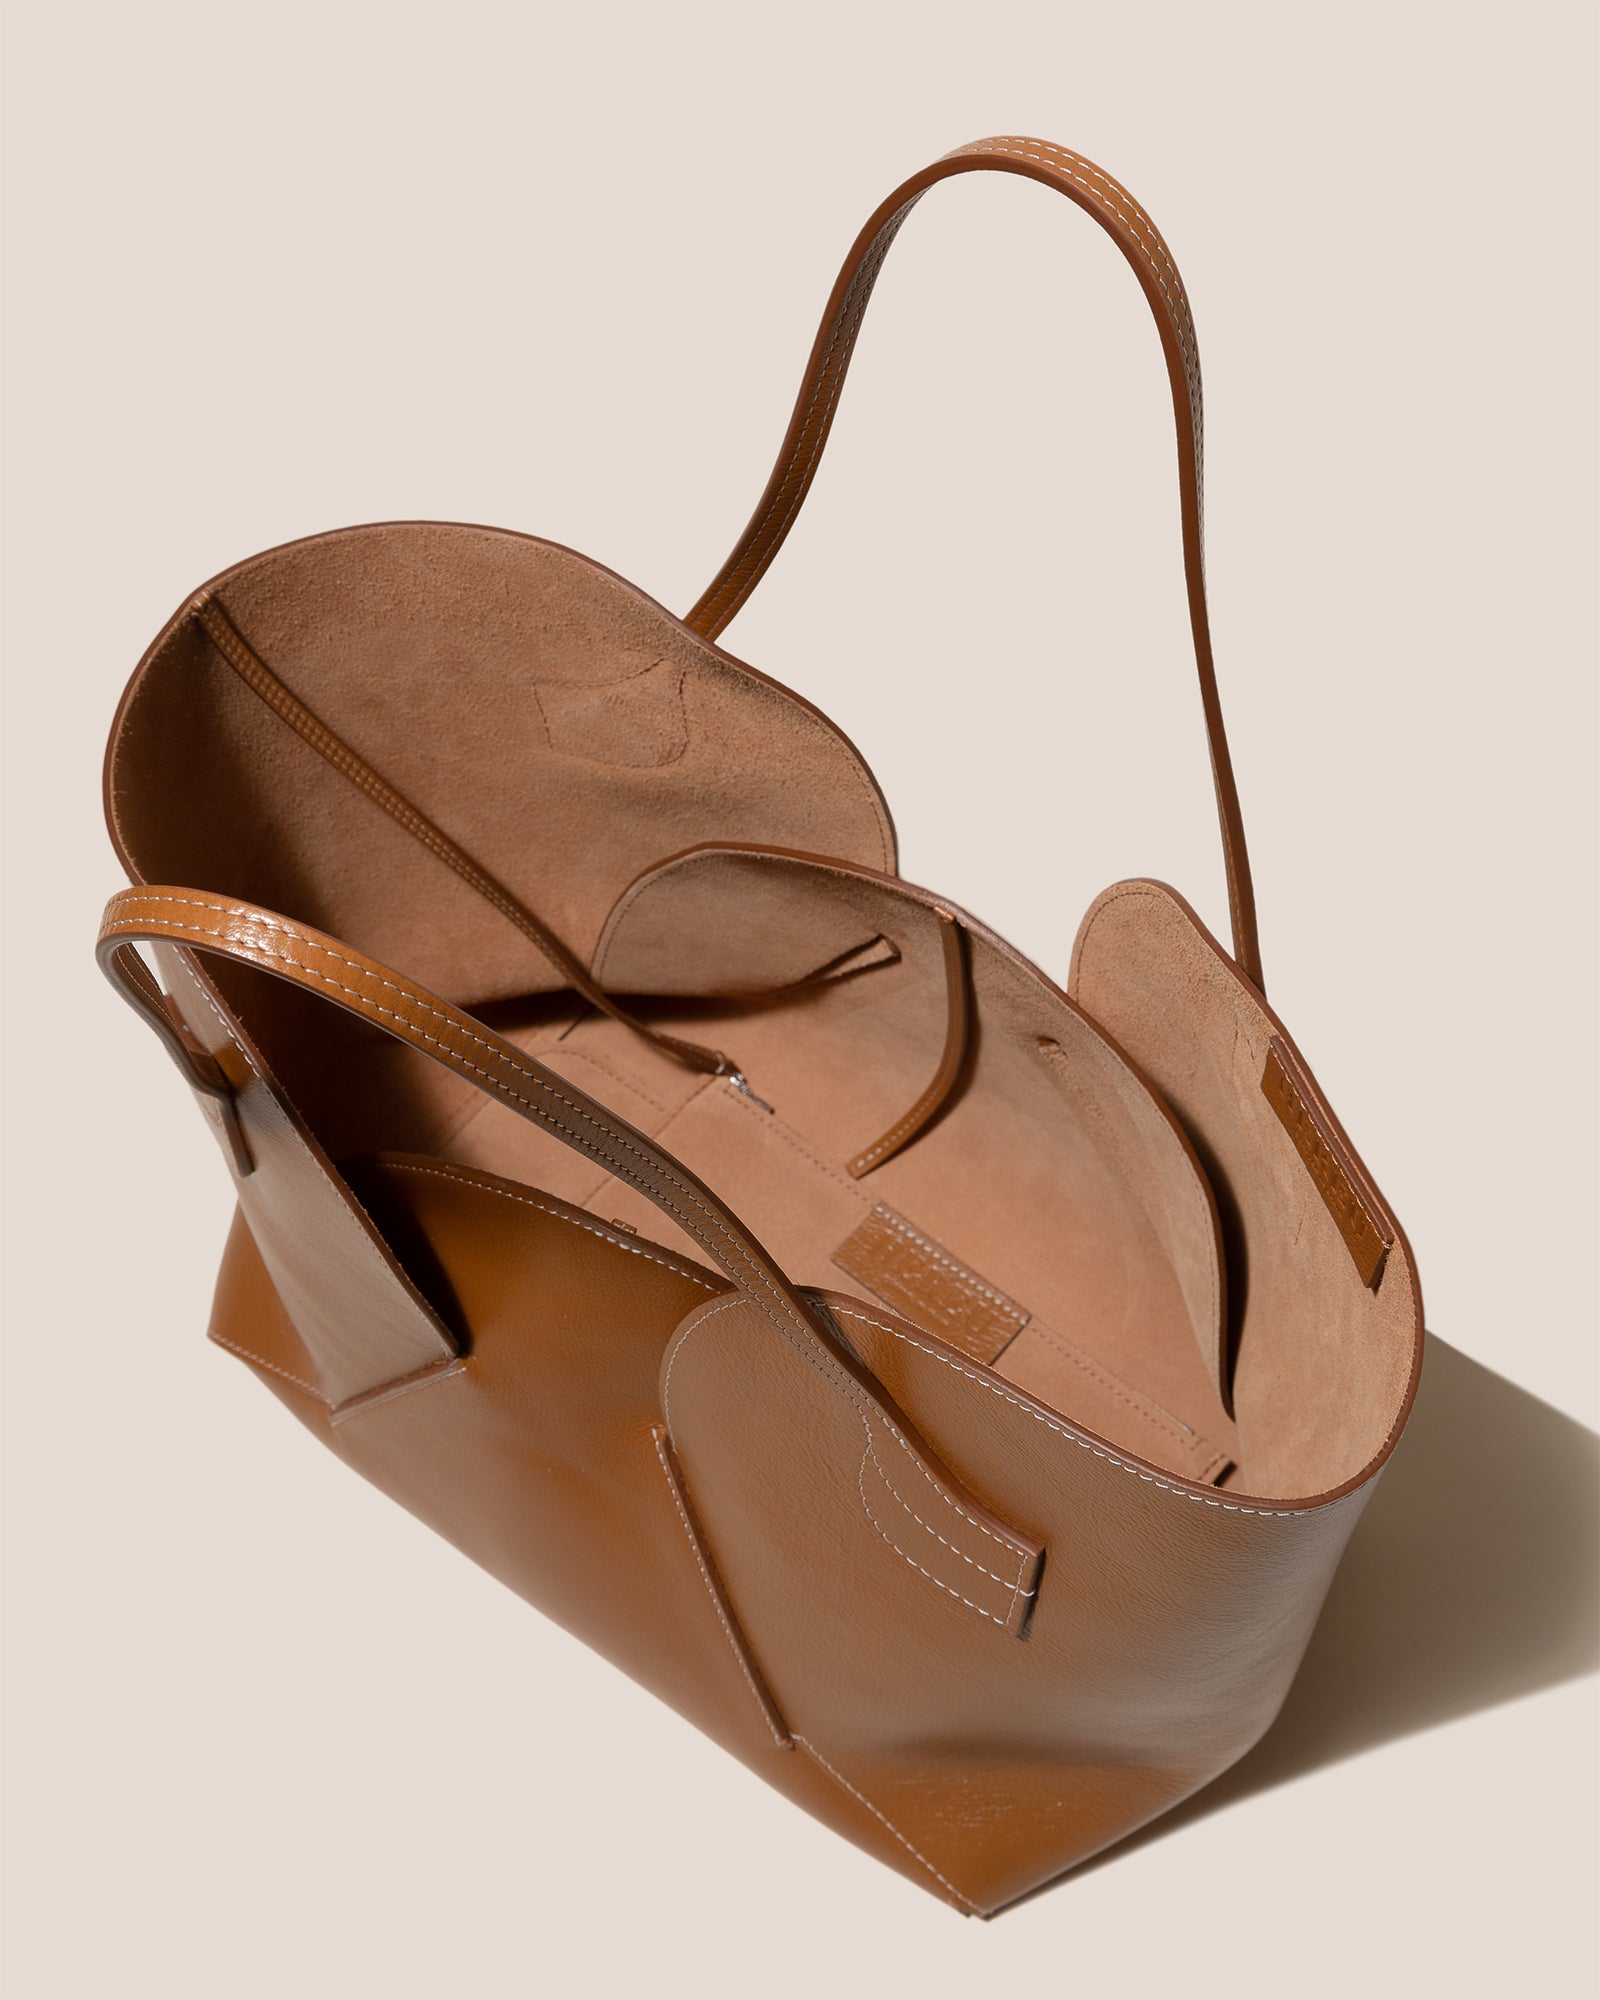 SEPAL - Tulip Shape Tote Bag – Hereu Studio